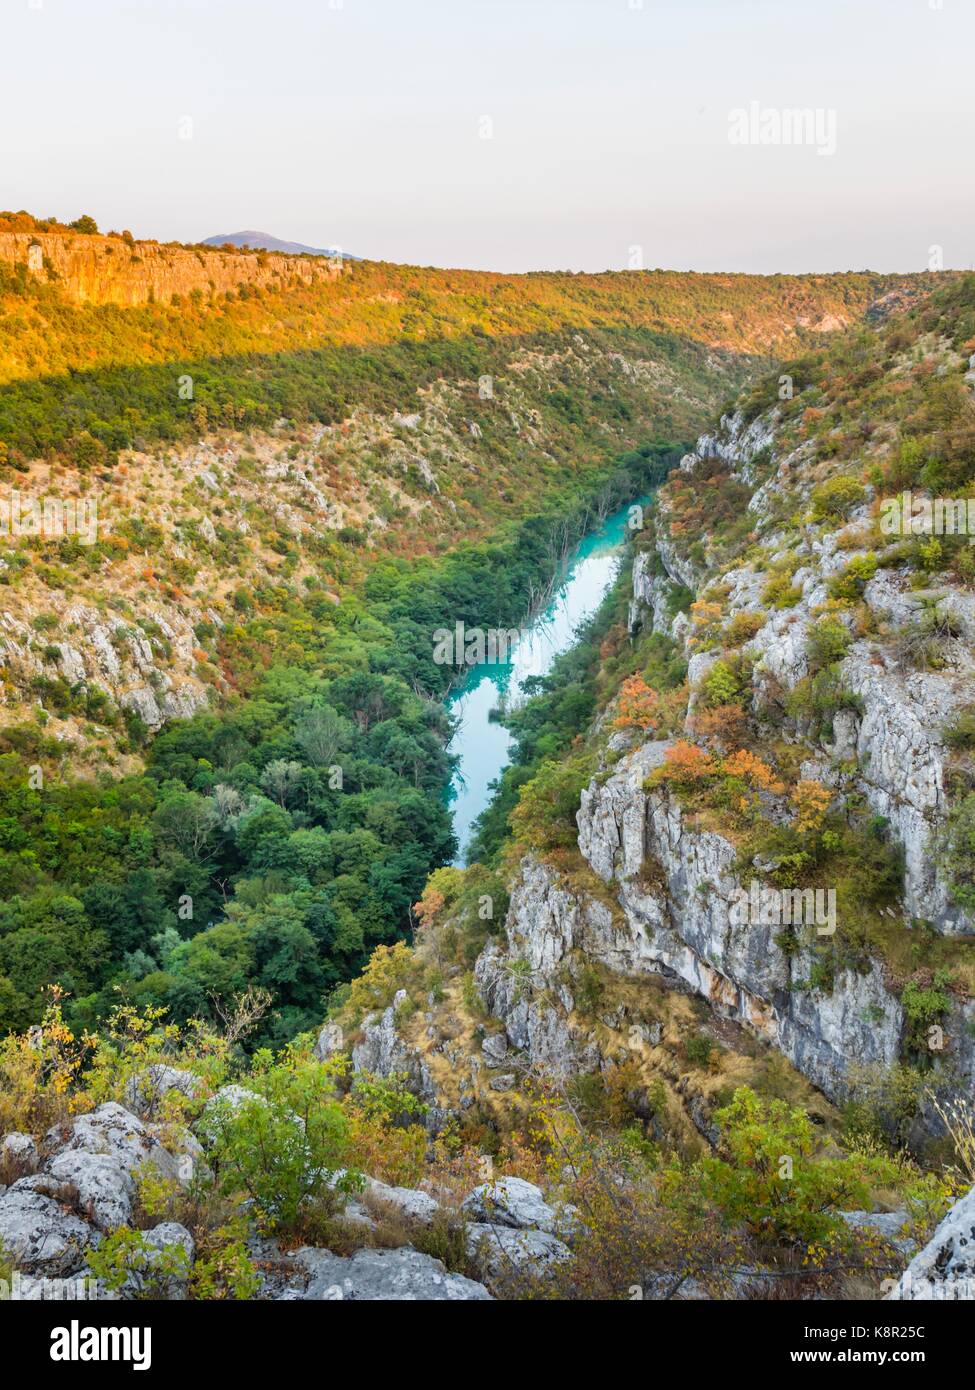 Manojlovac waterfall area in Croatia Stock Photo